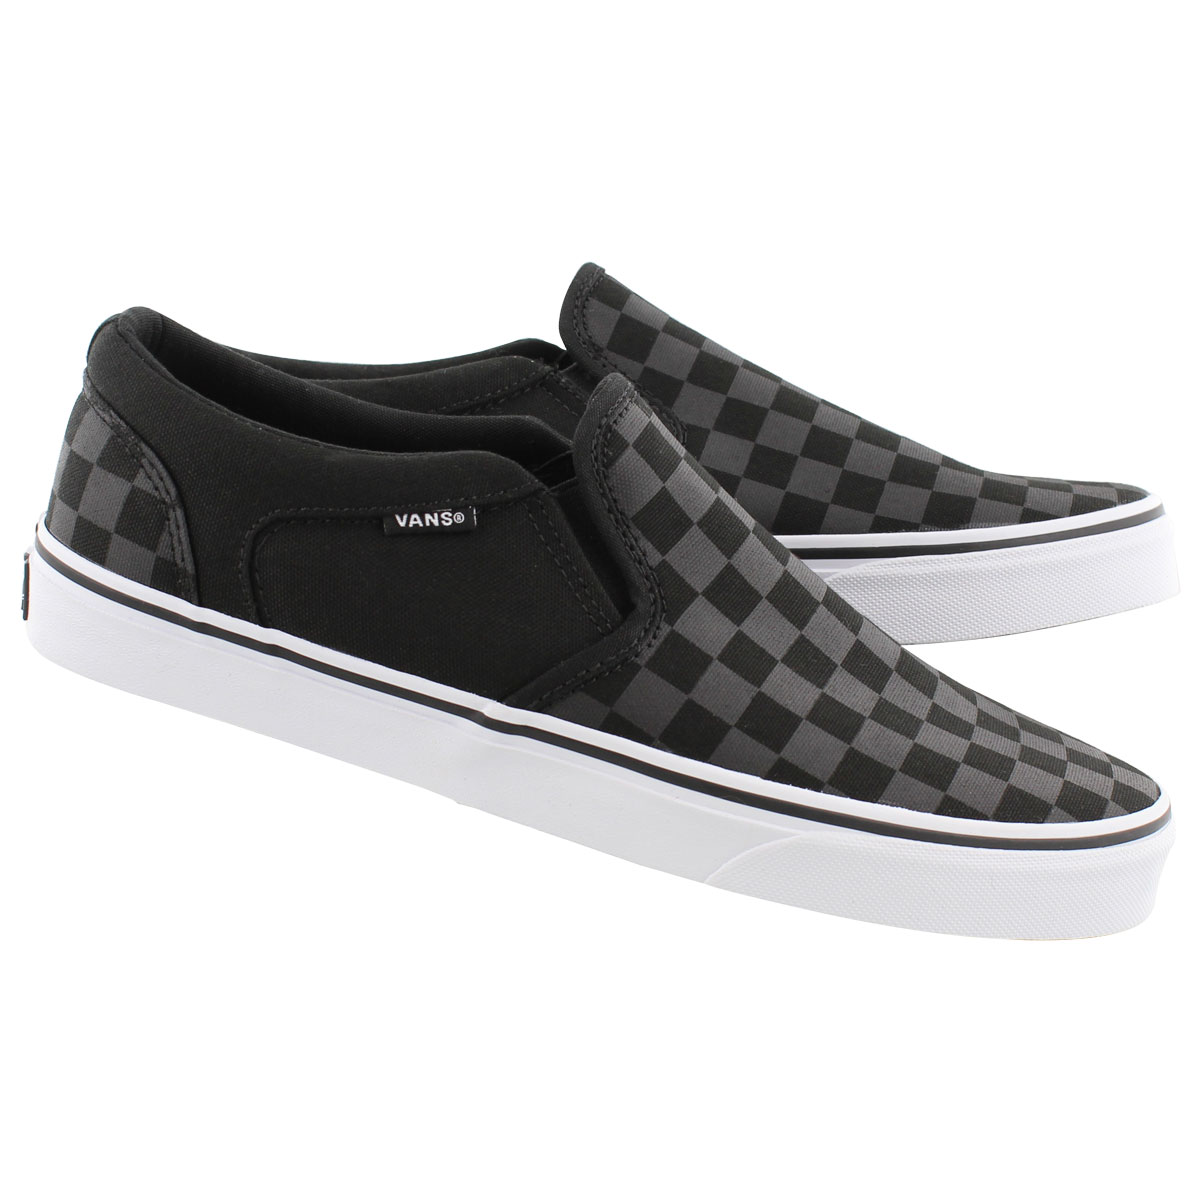 Vans Men's ASHER black checkered slip on sneakers